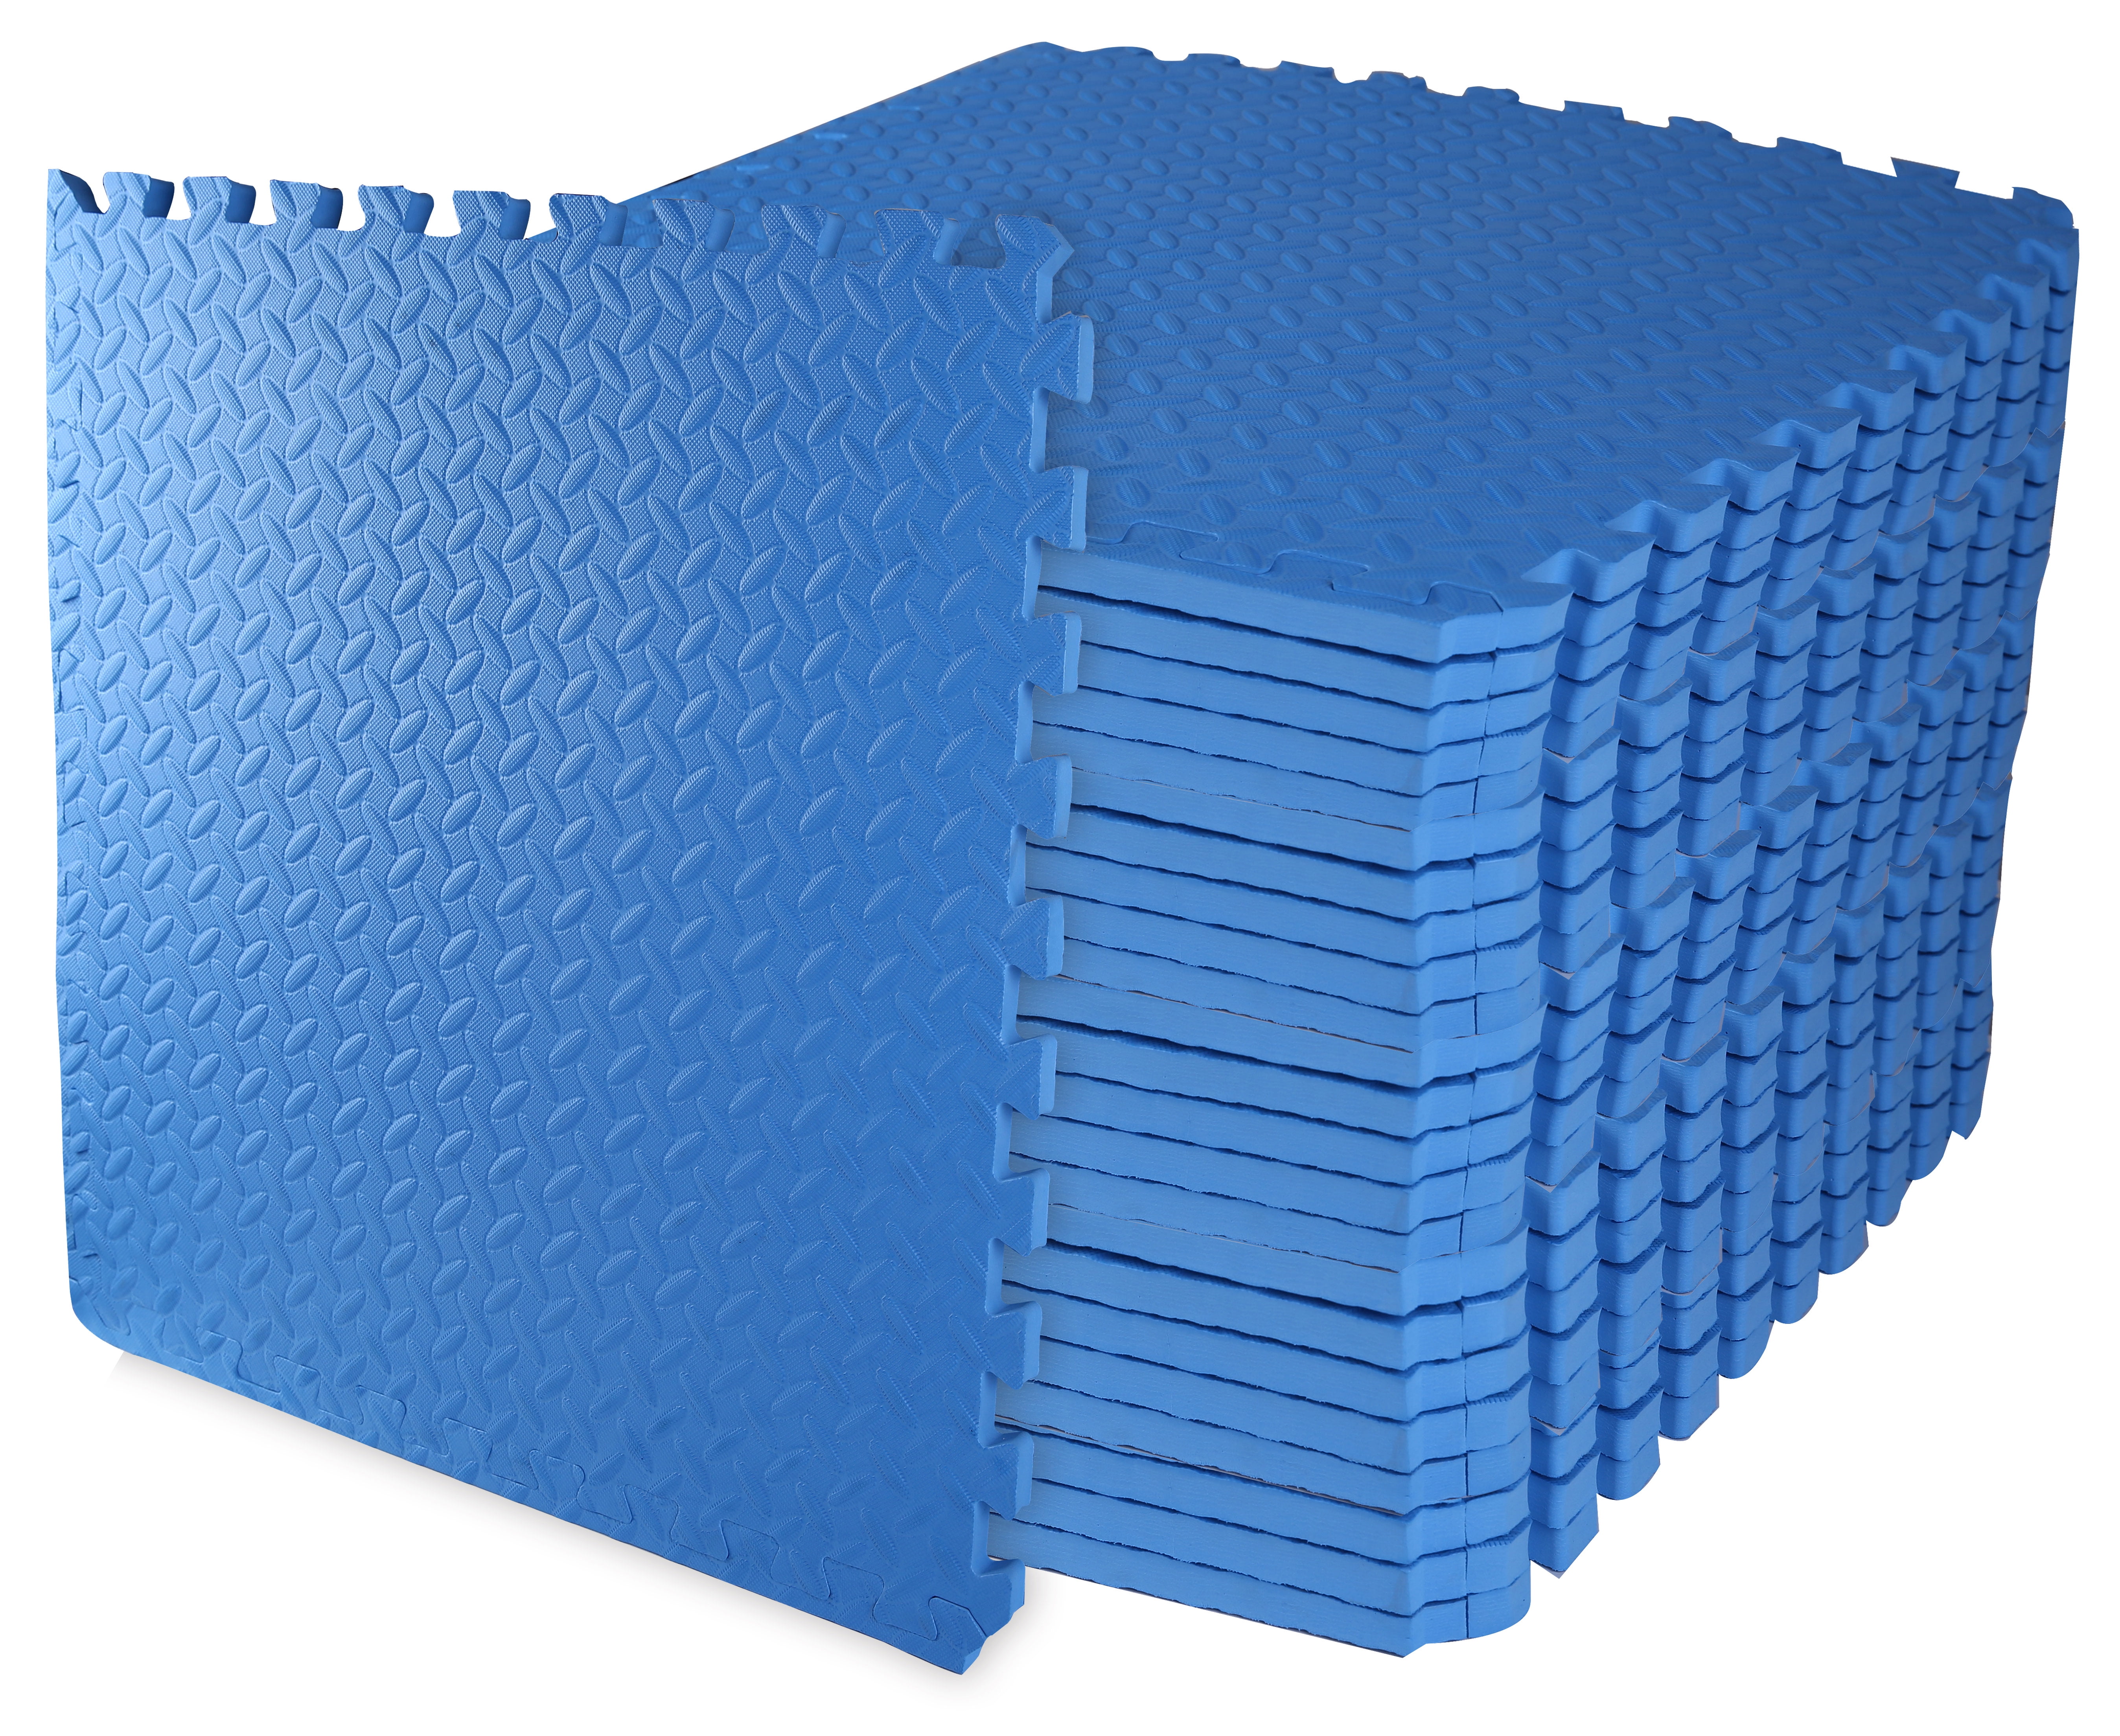 96 sq ft blue interlocking foam floor puzzle tiles mats puzzle mat flooring 